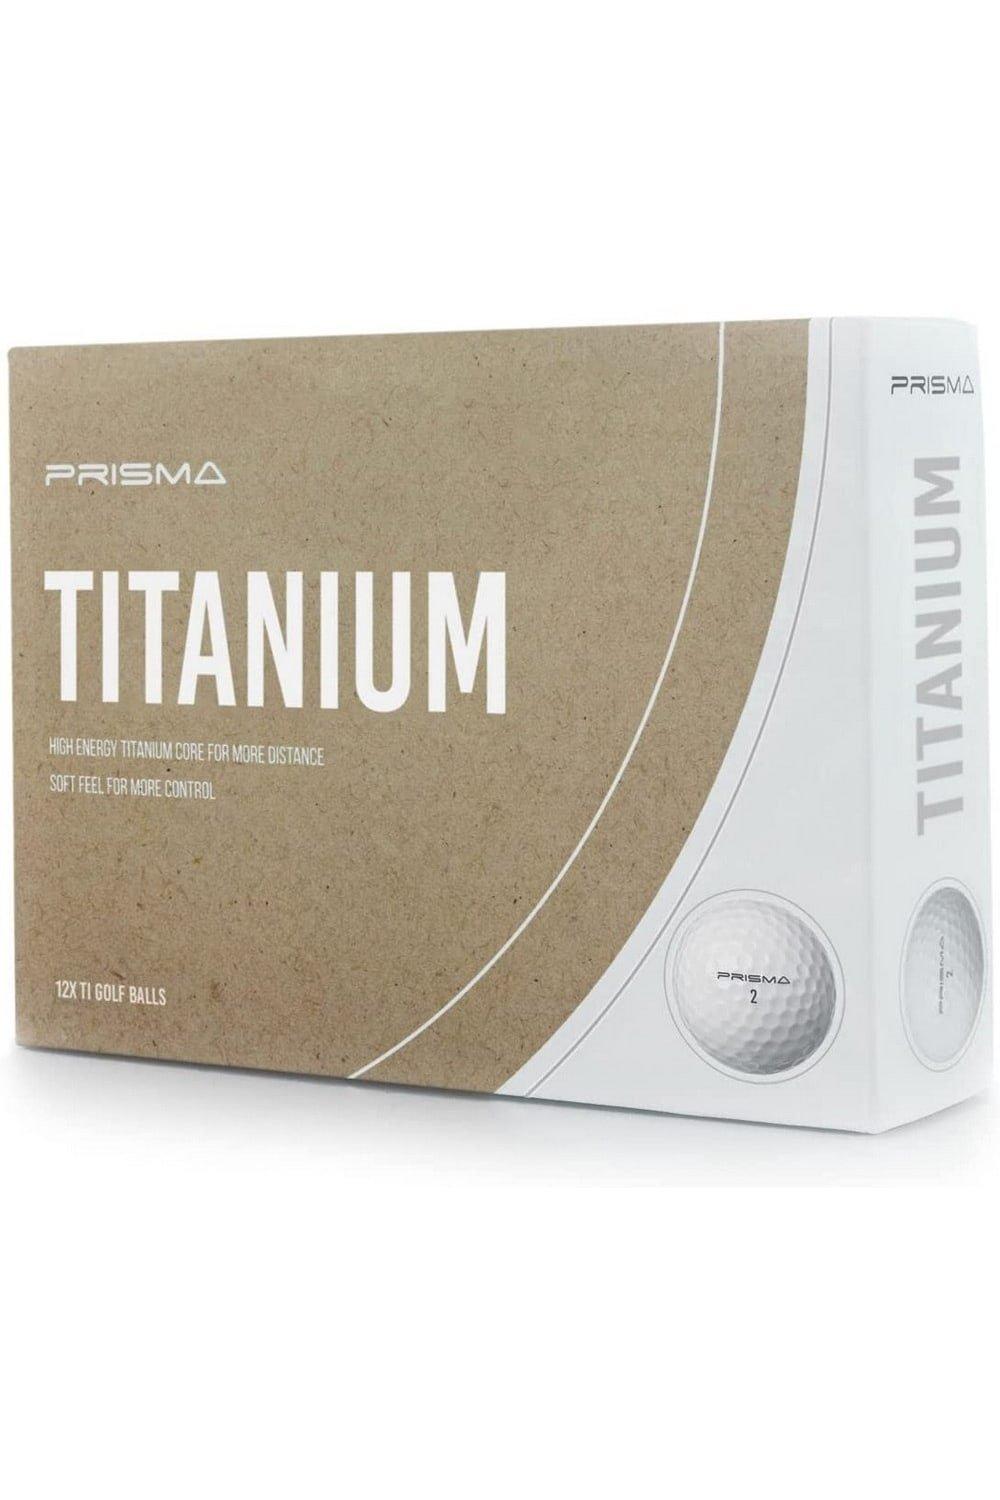 Prisma Titanium Golf Balls (Pack of 12)